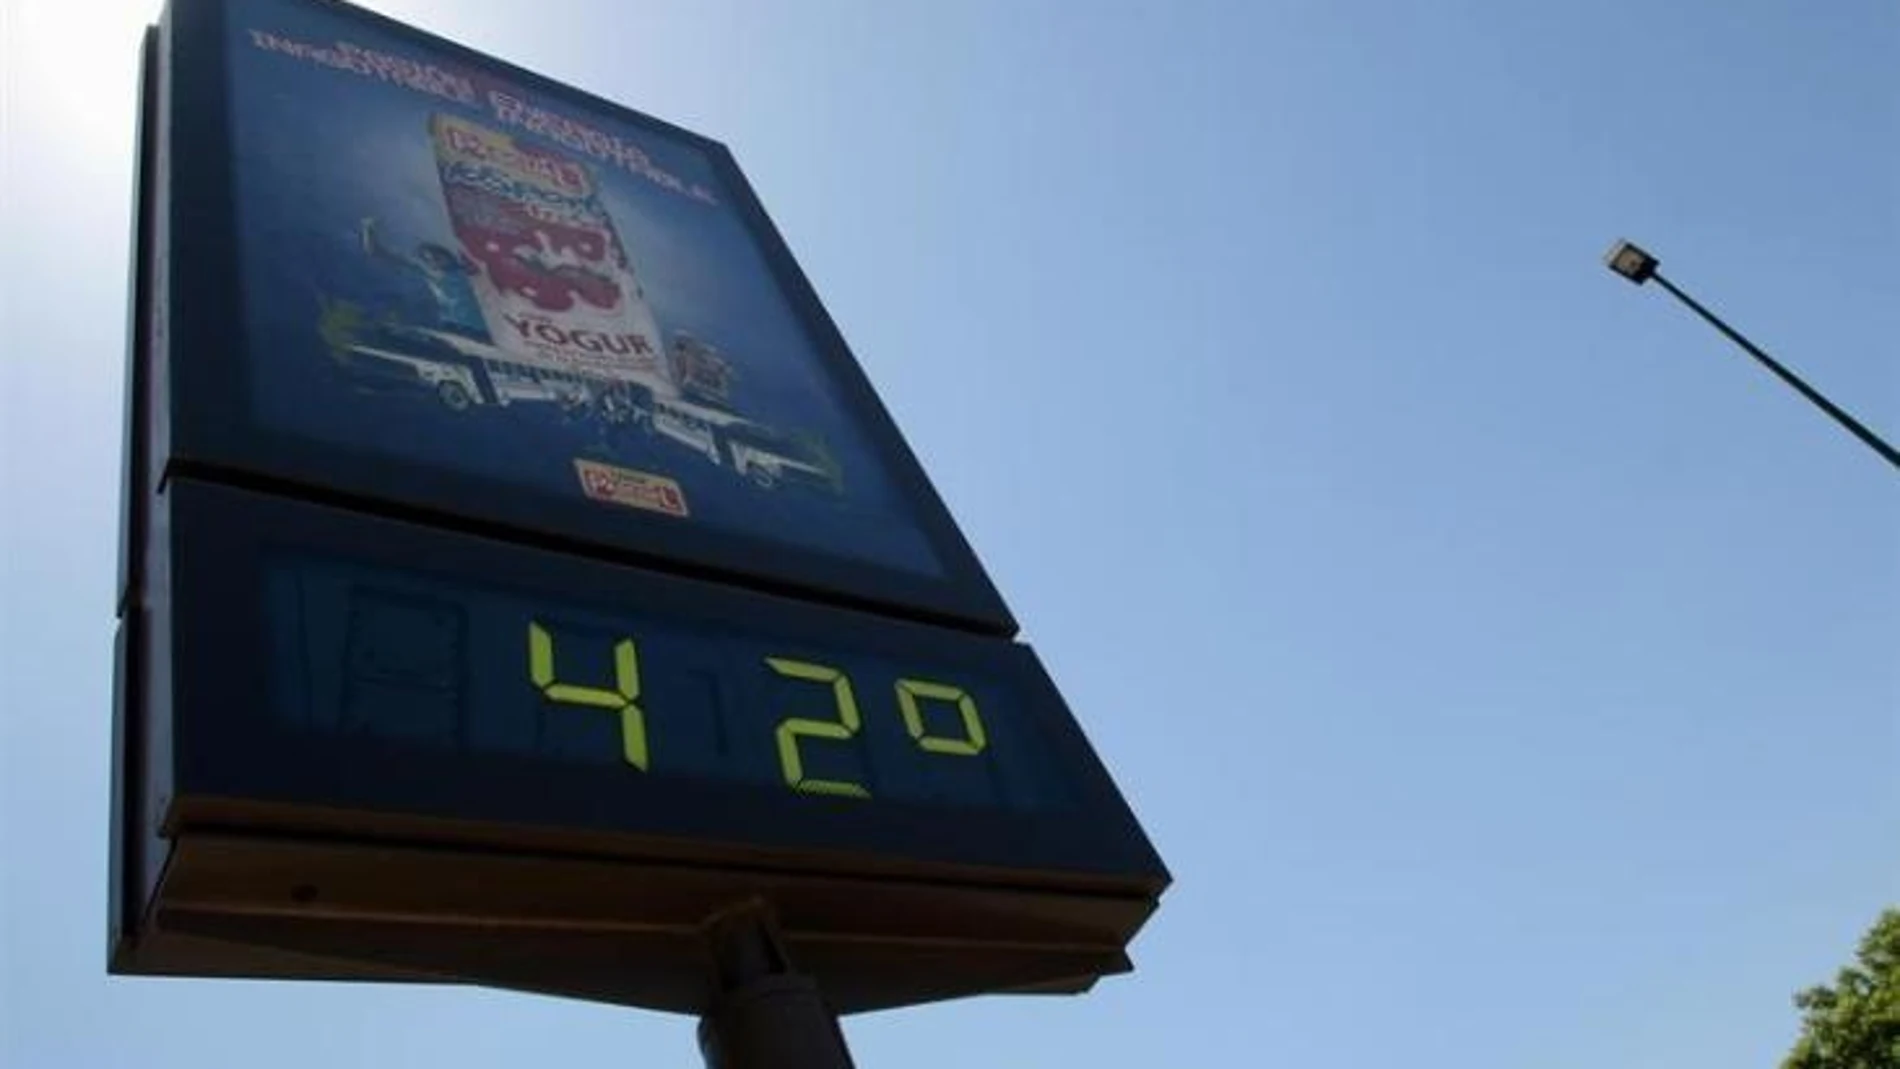 Xàtiva (Valencia) bate el récord de calor de 2020 en España con 42,2 grados